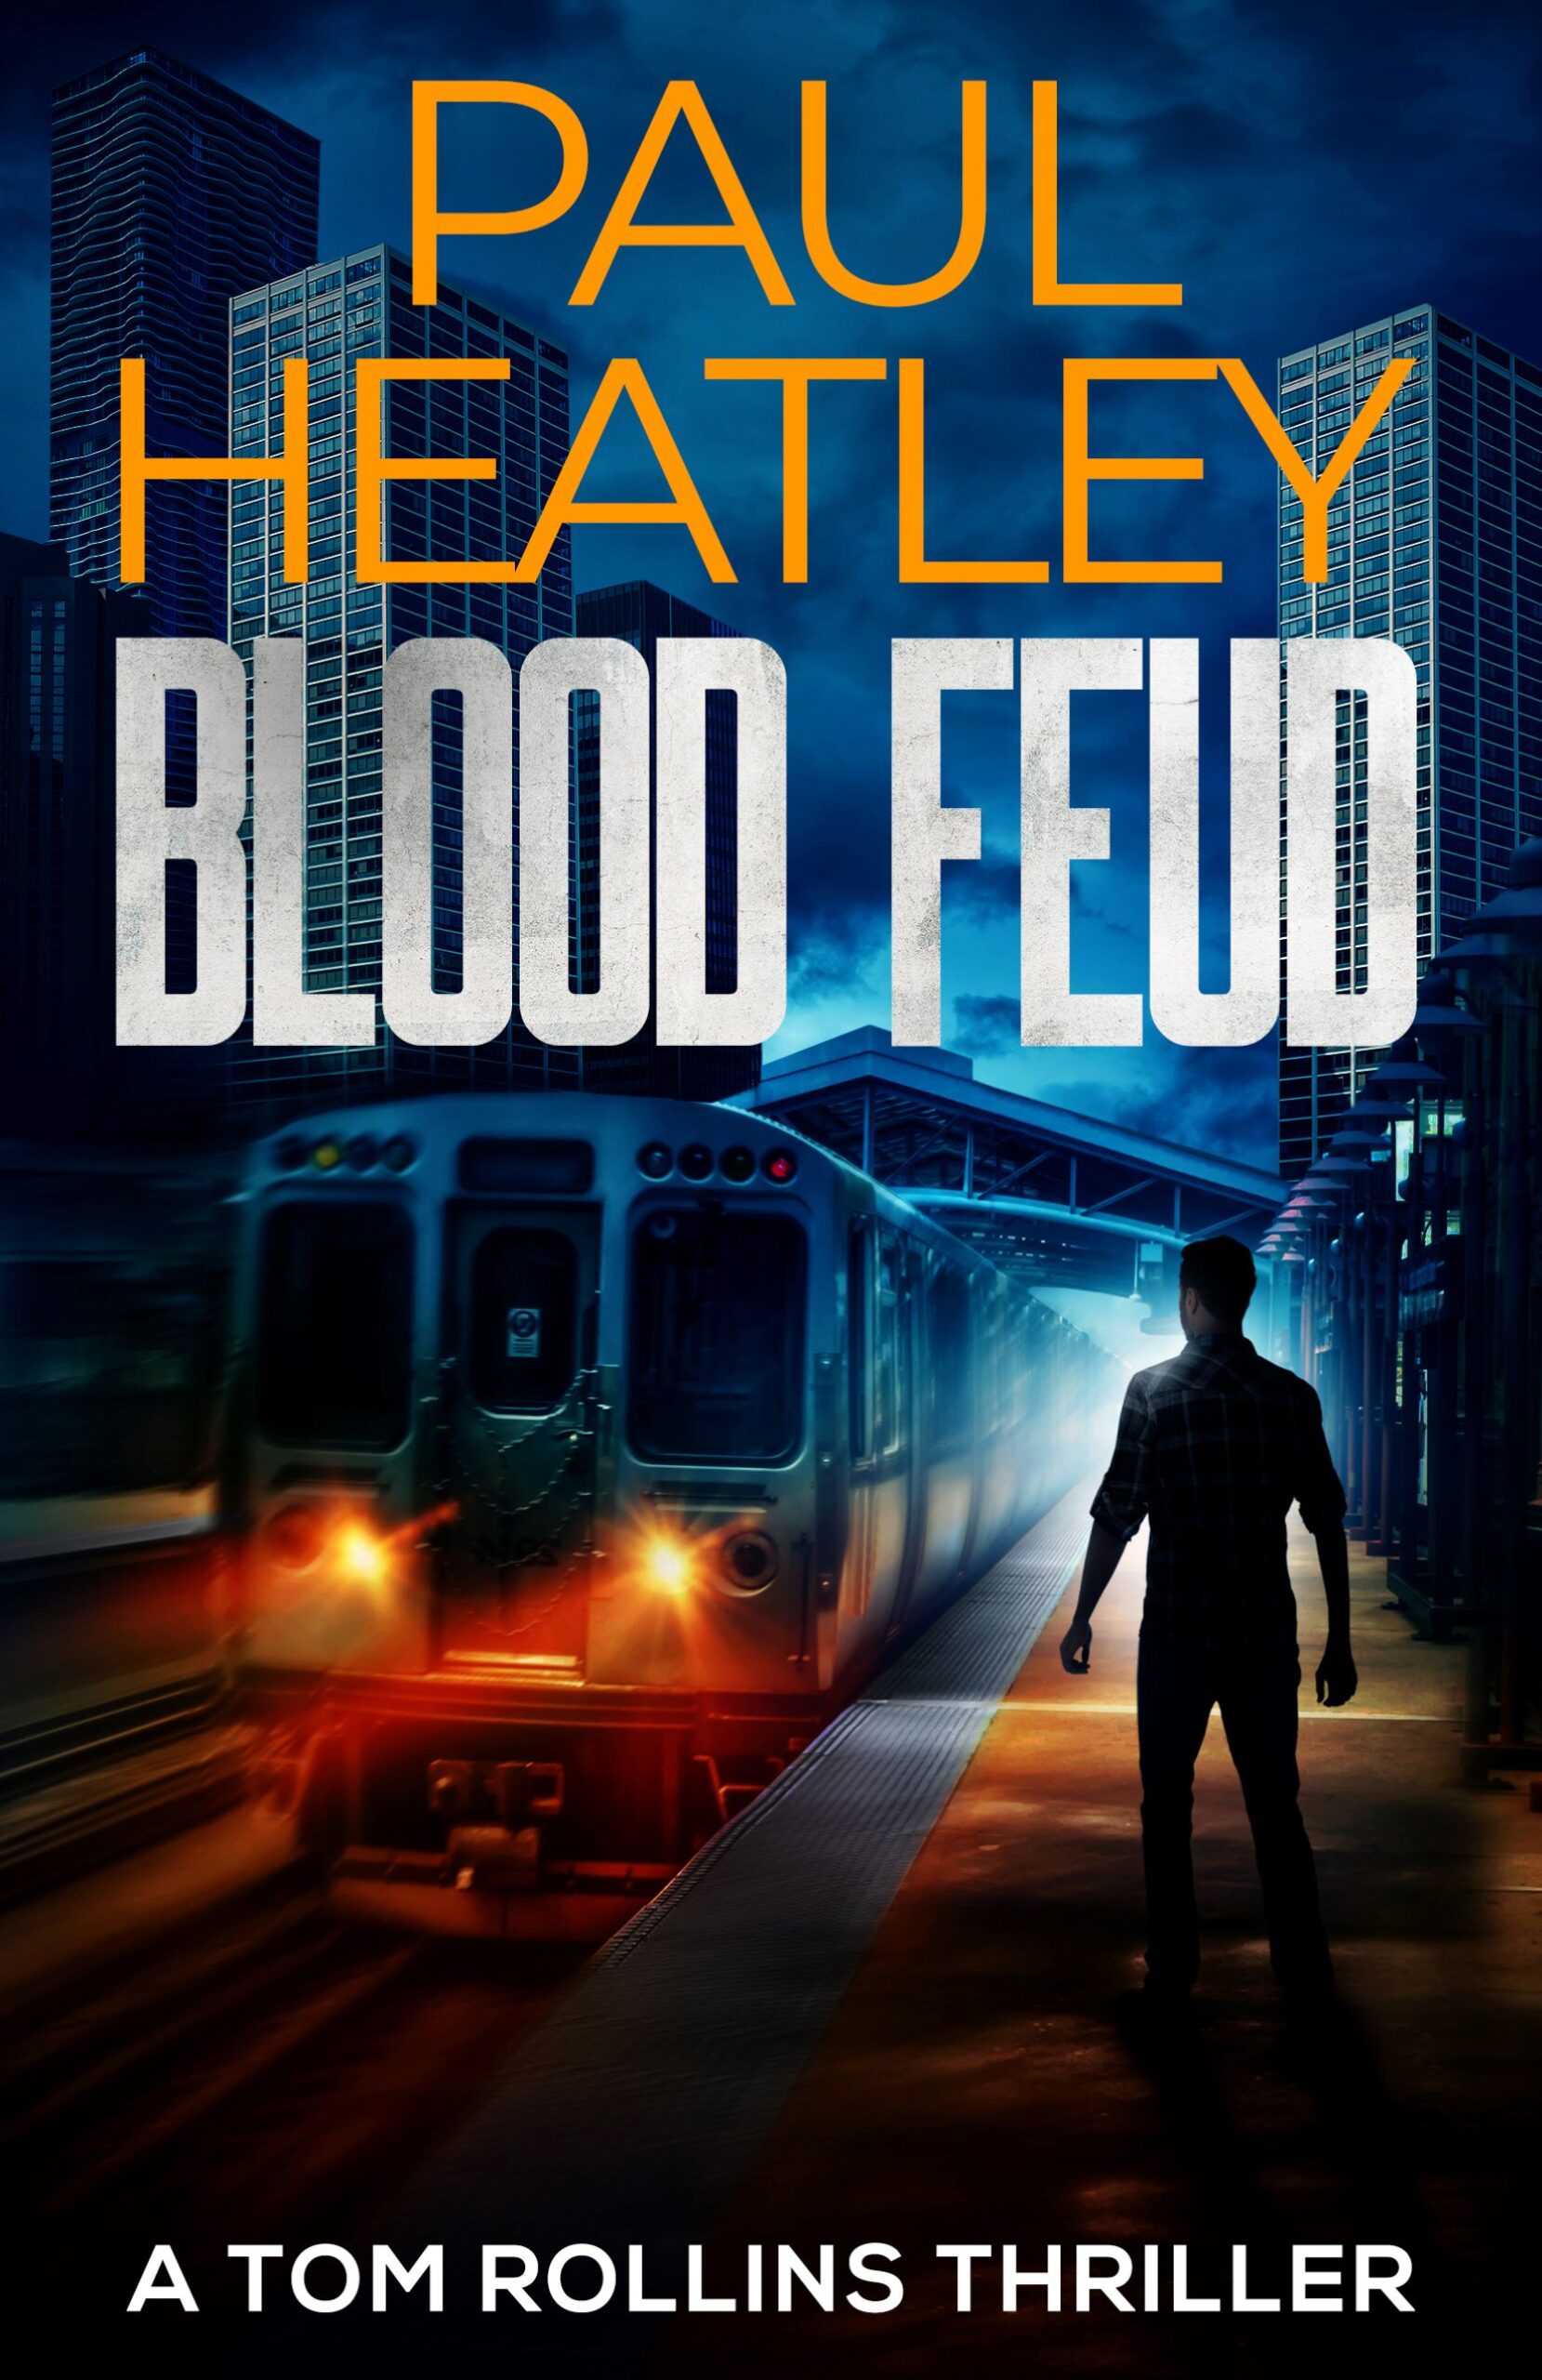 PAUL HEATLEY NEW RELEASE – BLOOD FEUD